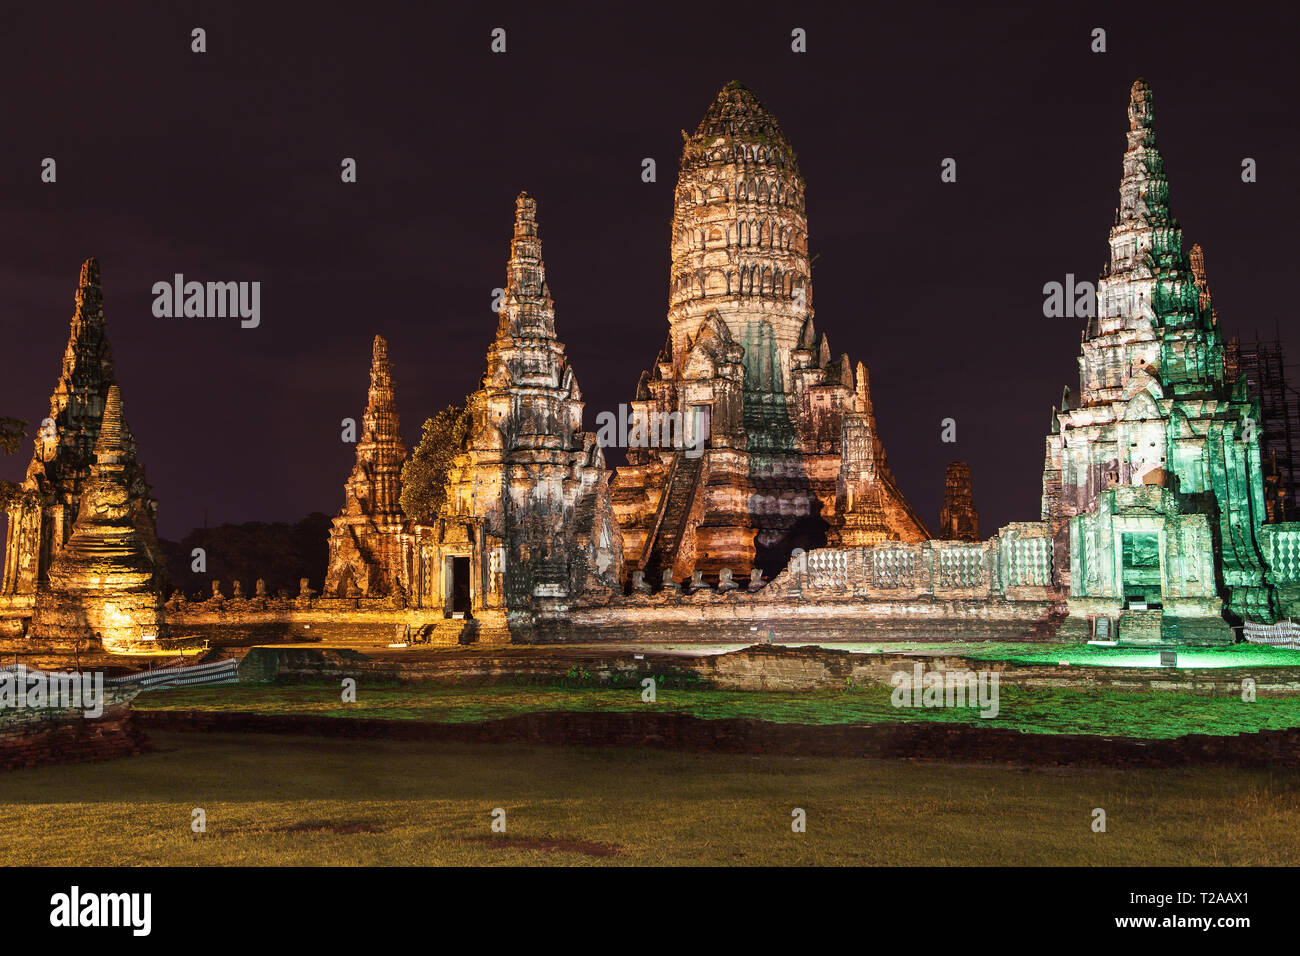 Wat Chaiwatthanaram at night, Ayutthaya, Thailand. Stock Photo